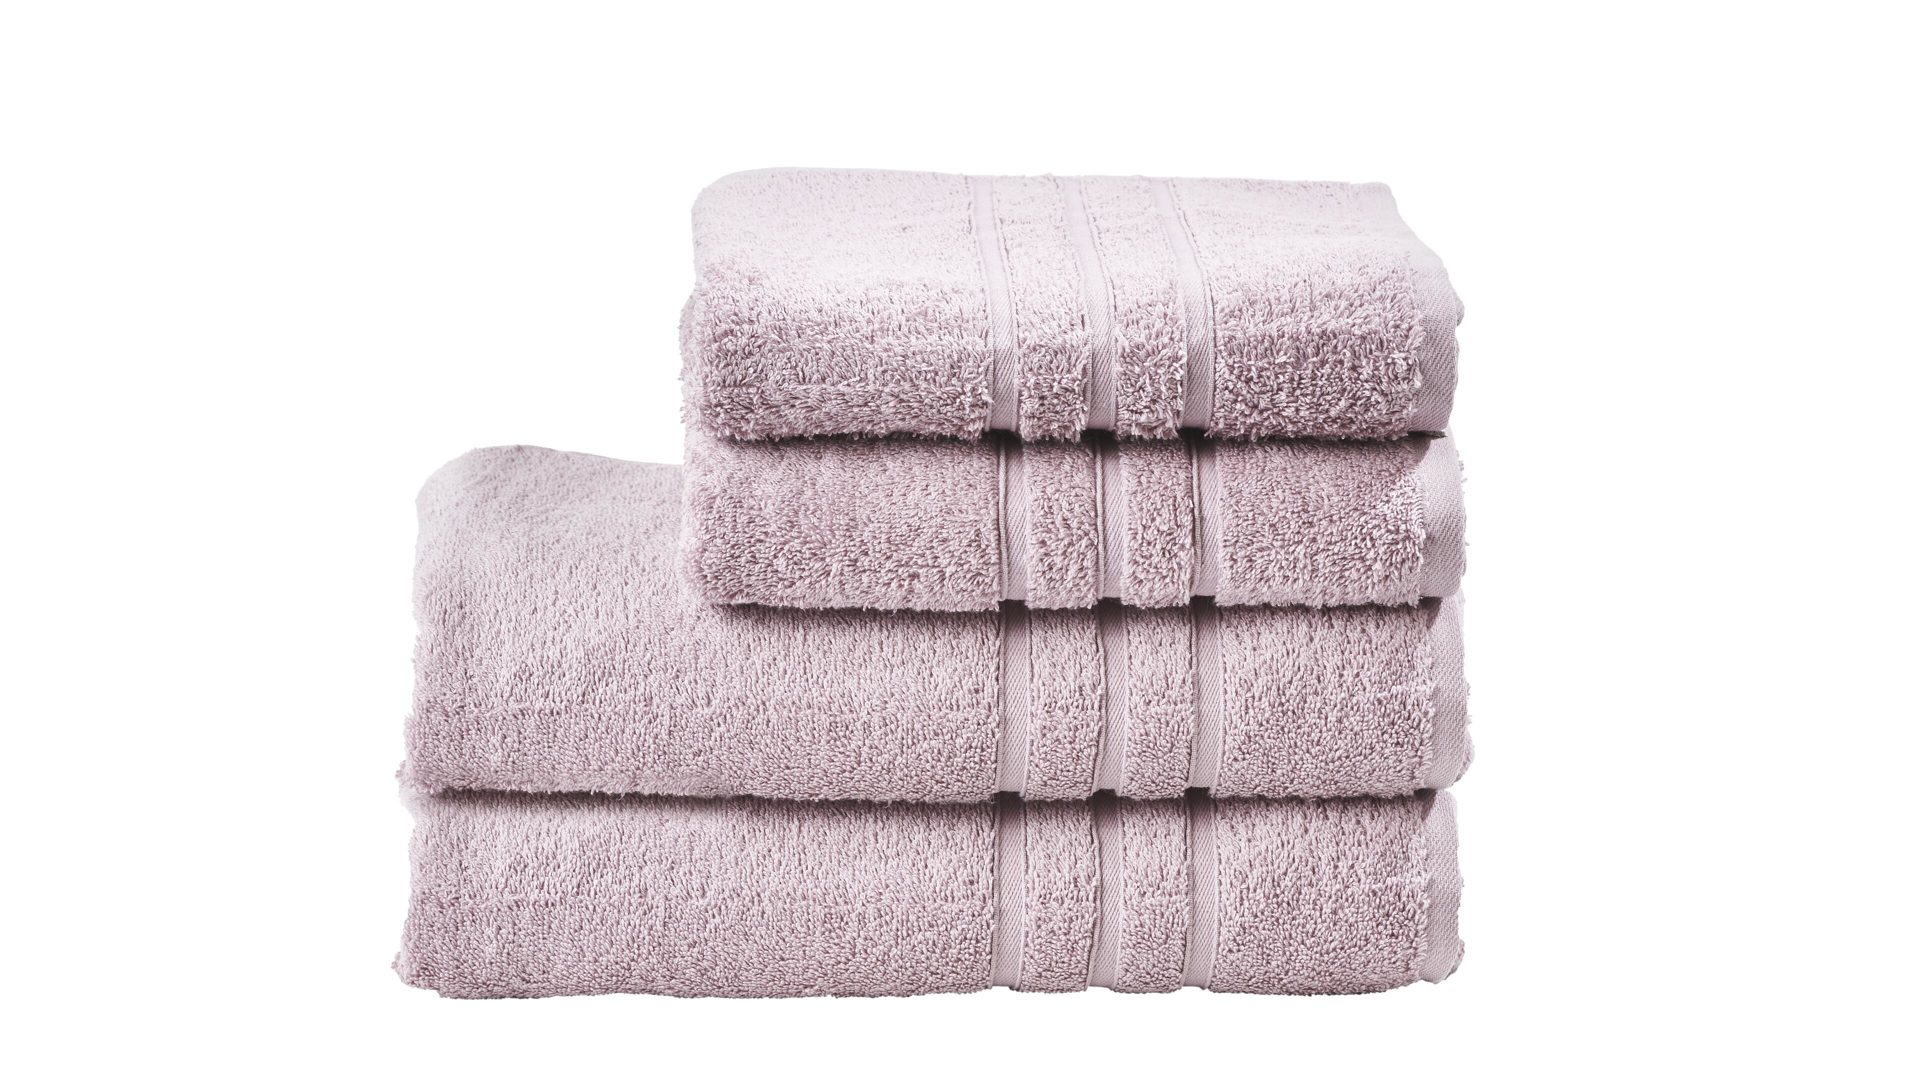 Handtuch-Set Done by karabel home company aus Stoff in Pastellfarben Done Handtuch-Set Daily Uni altrosafarbene Baumwolle – vierteilig